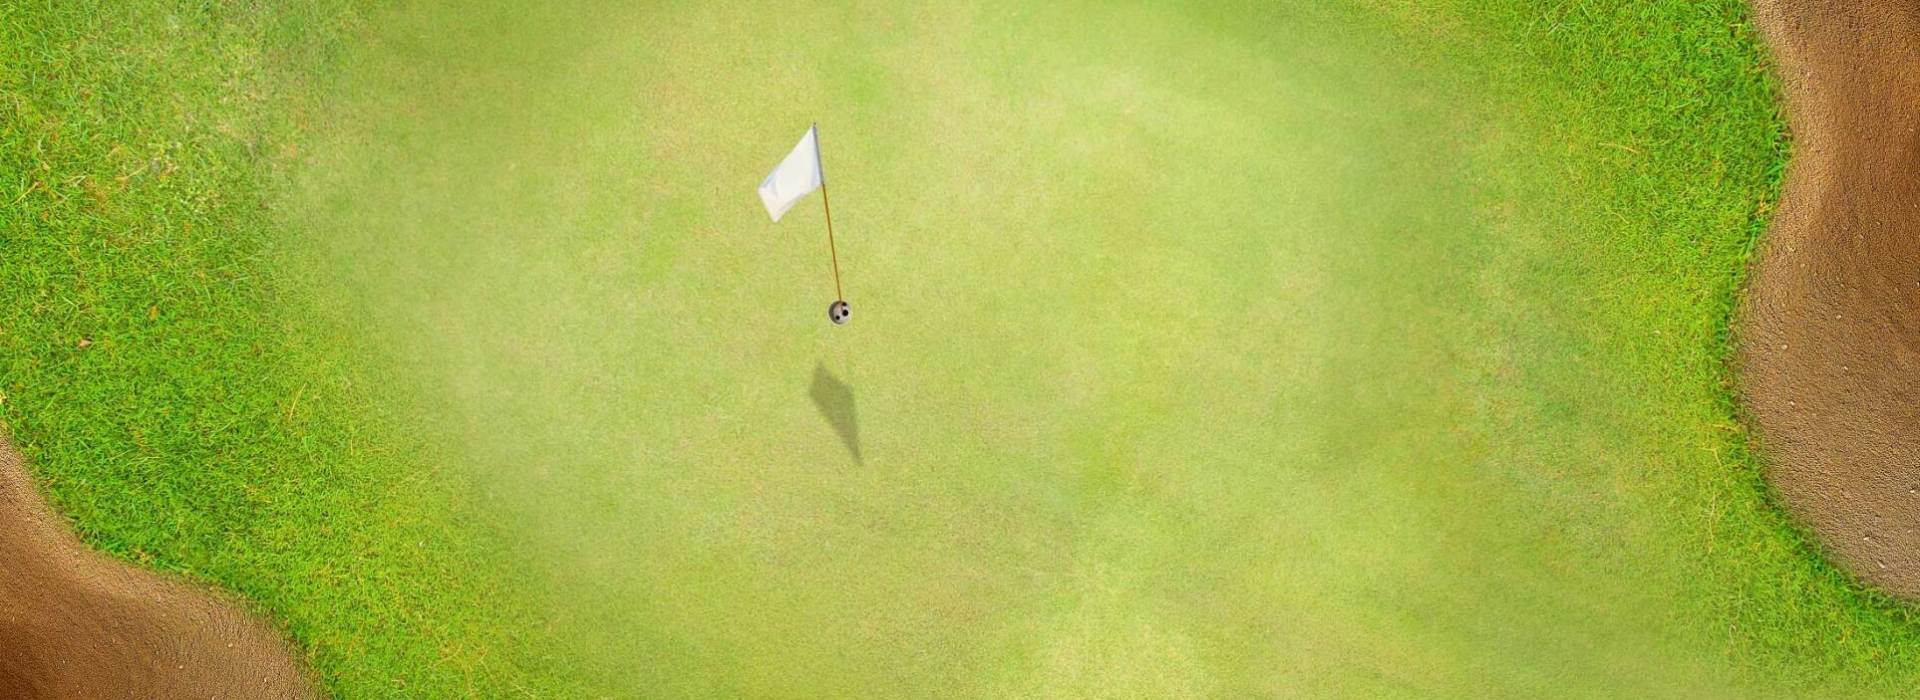 golf flag on course